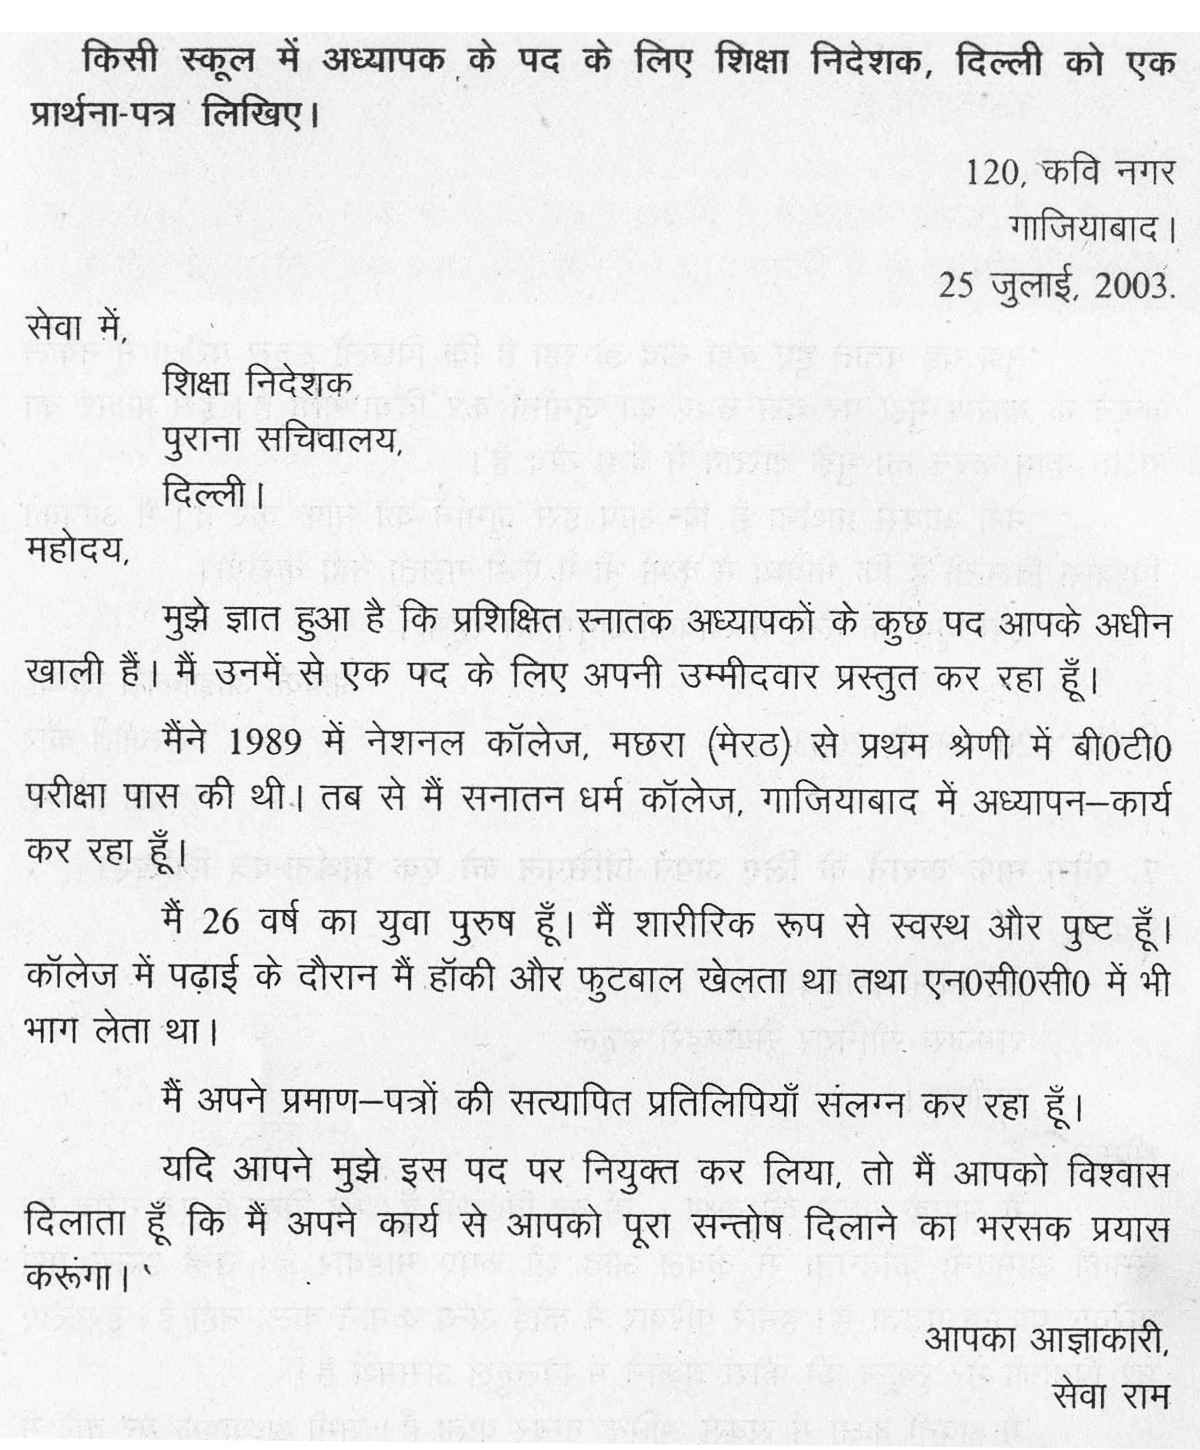 Cover letter for hindi teacher resume